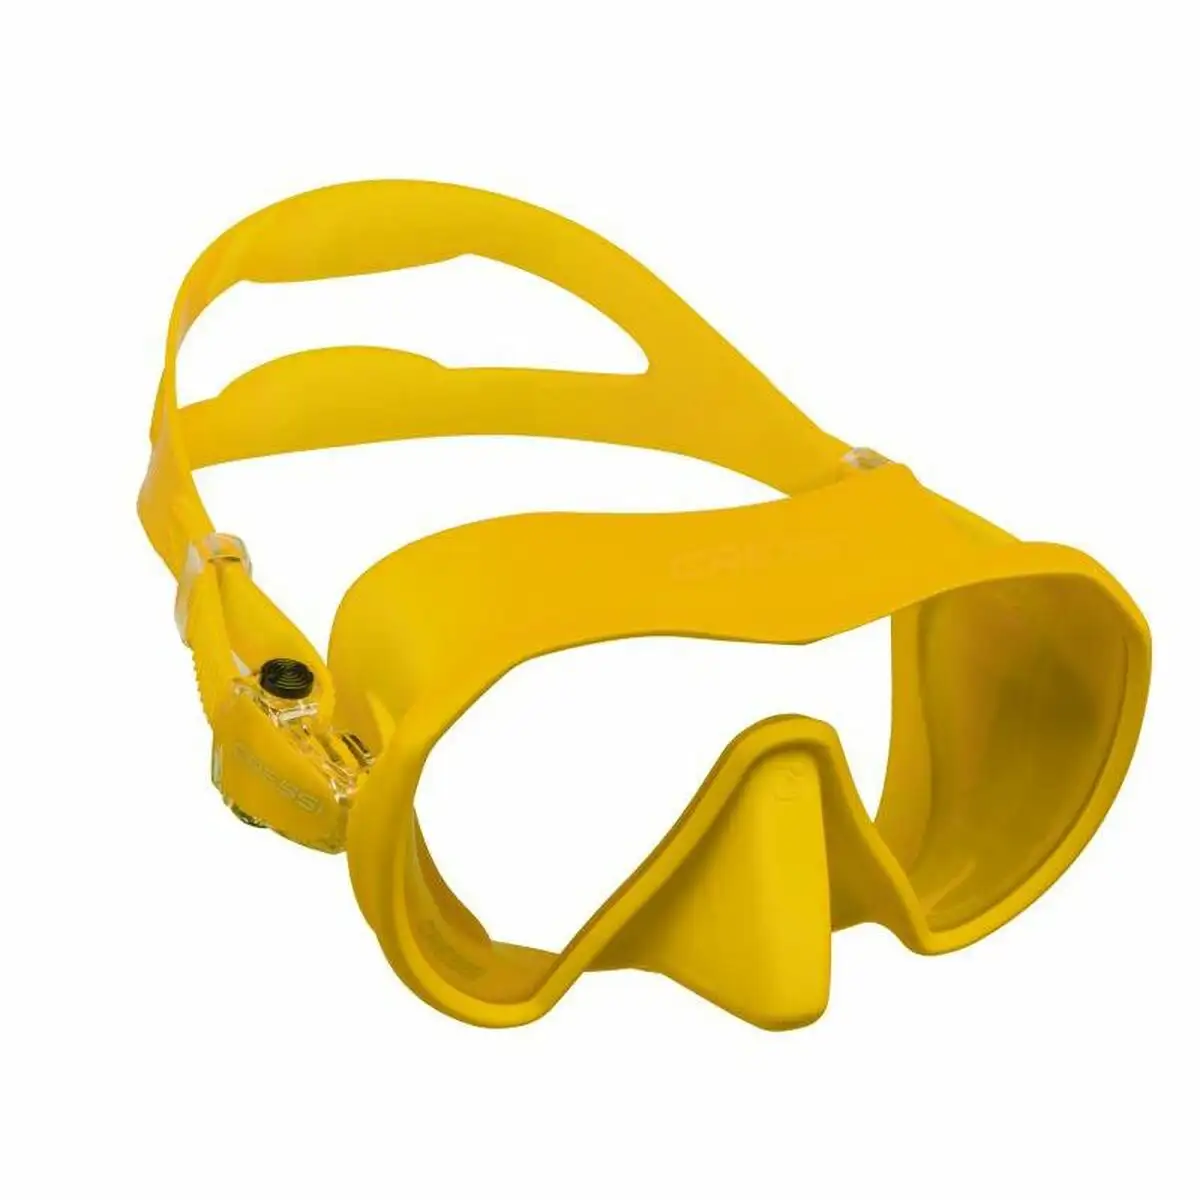 Masque de plongee cressi sub z1 jaune multicouleur_6525. DIAYTAR SENEGAL - Votre Passage vers l'Élégance Accessible. Parcourez notre boutique en ligne pour trouver des produits qui vous permettent d'allier style et économies.